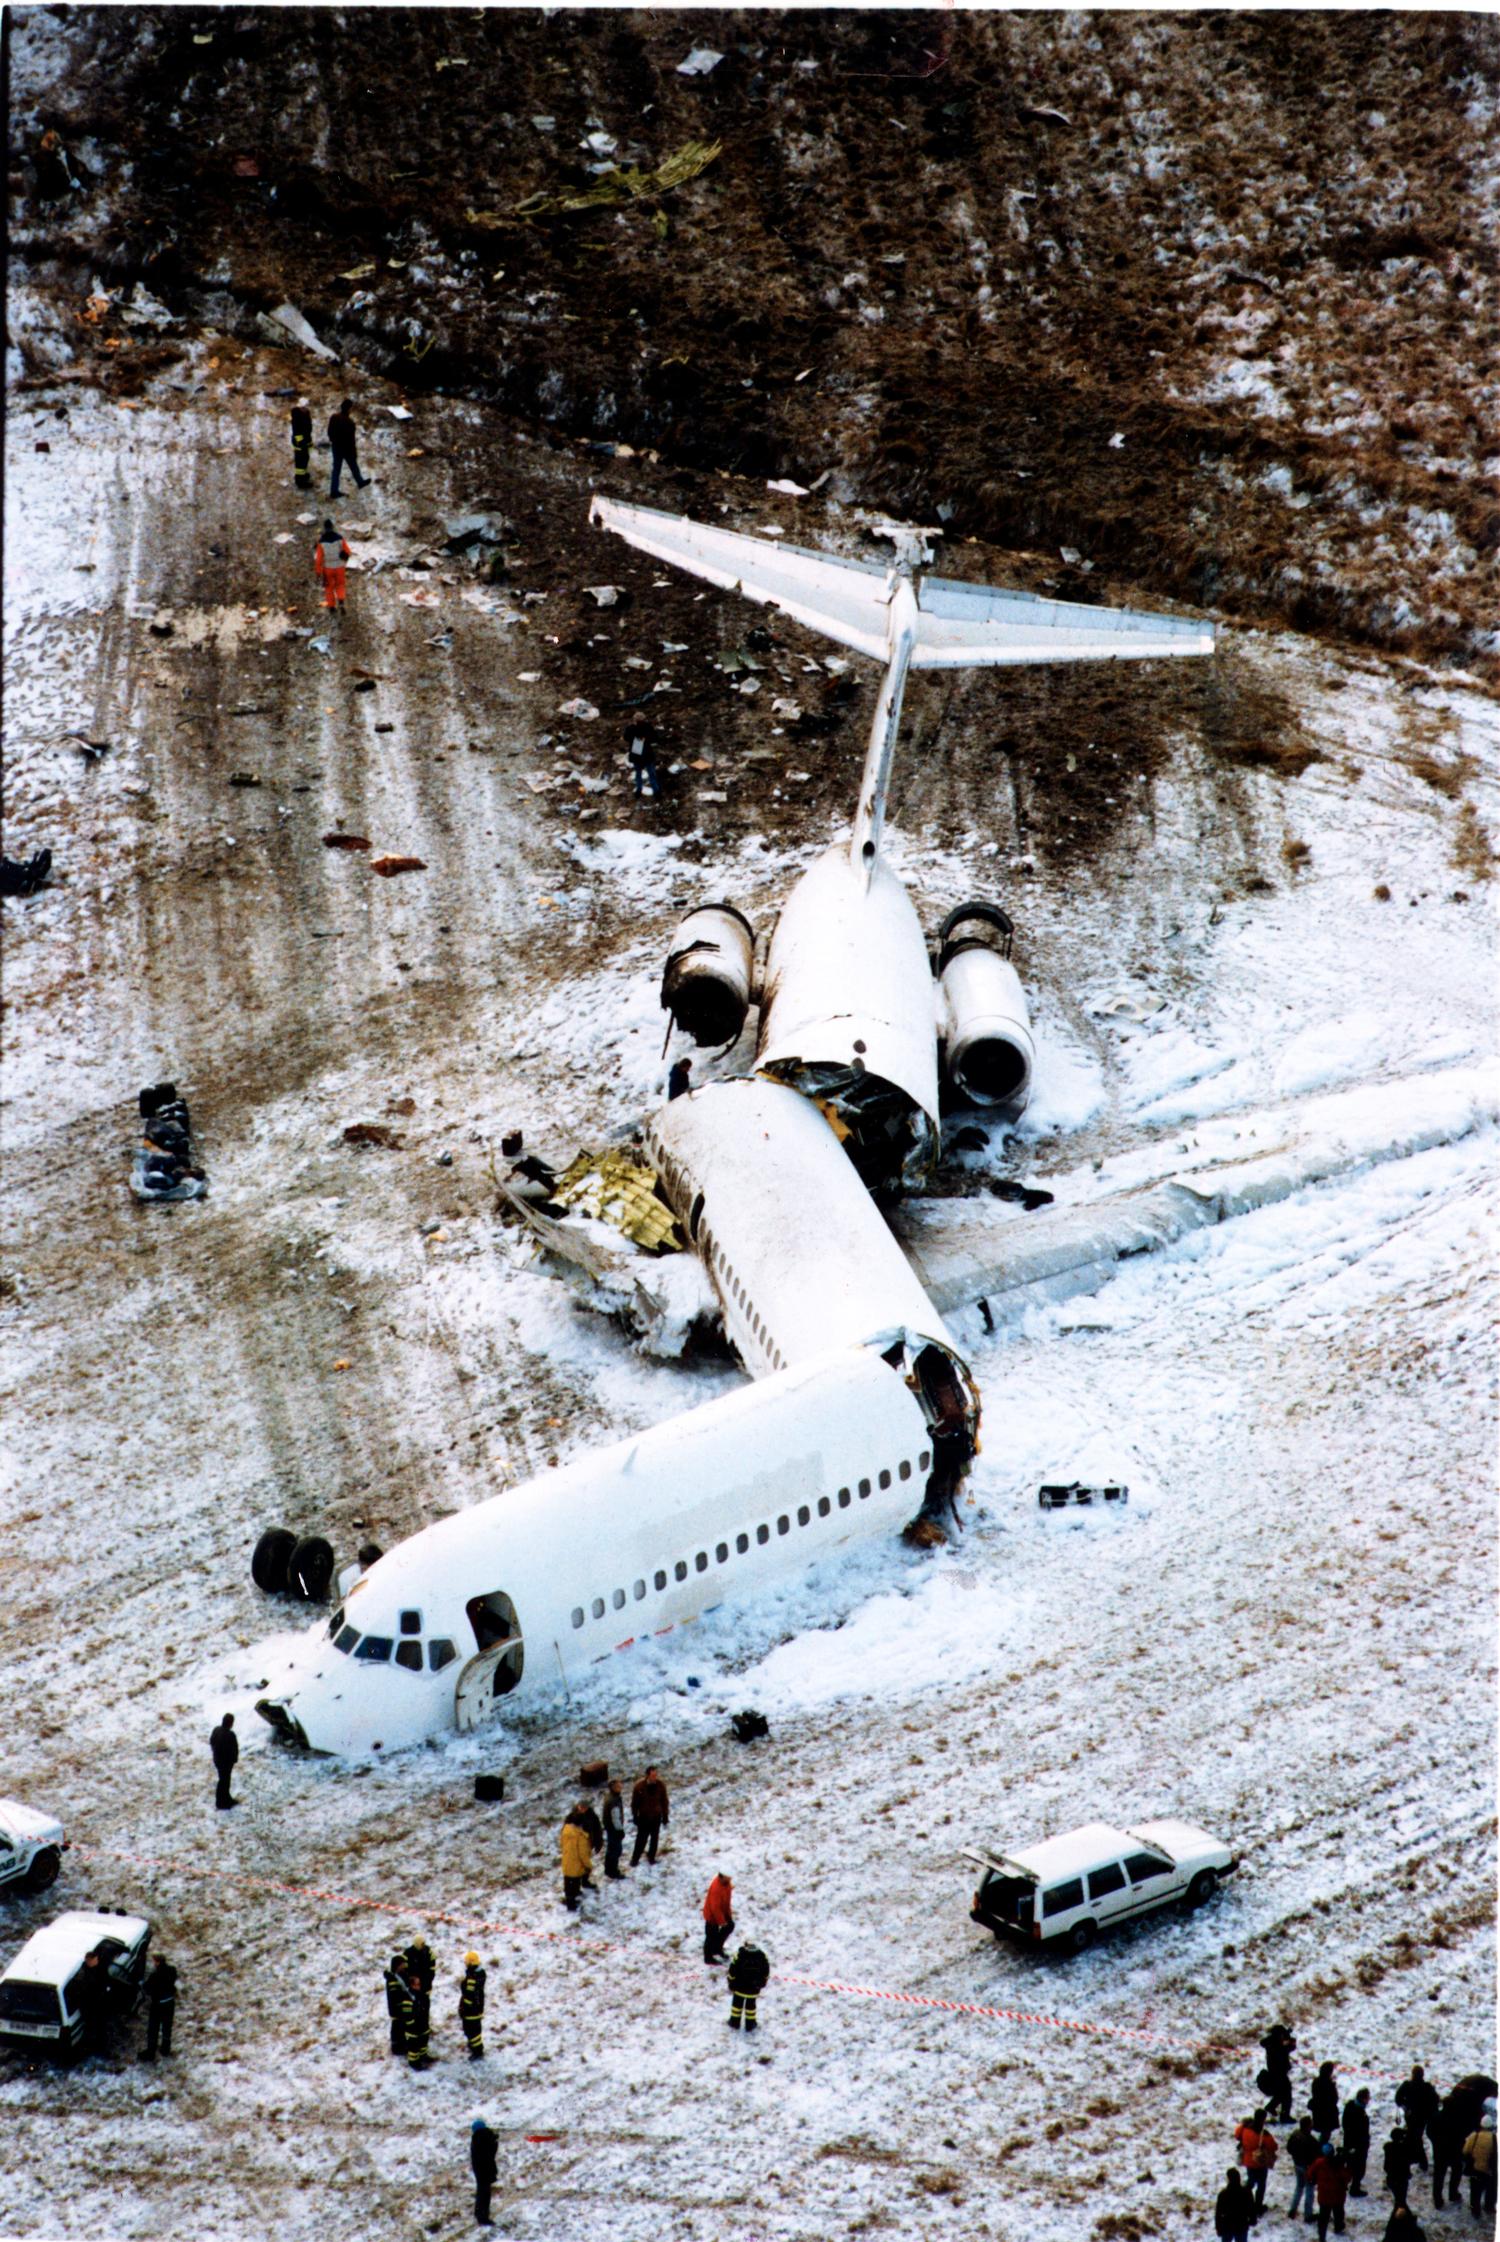 Vid flygolyckan i Gottröra 1991 överlevde samtliga 129 personer ombord.